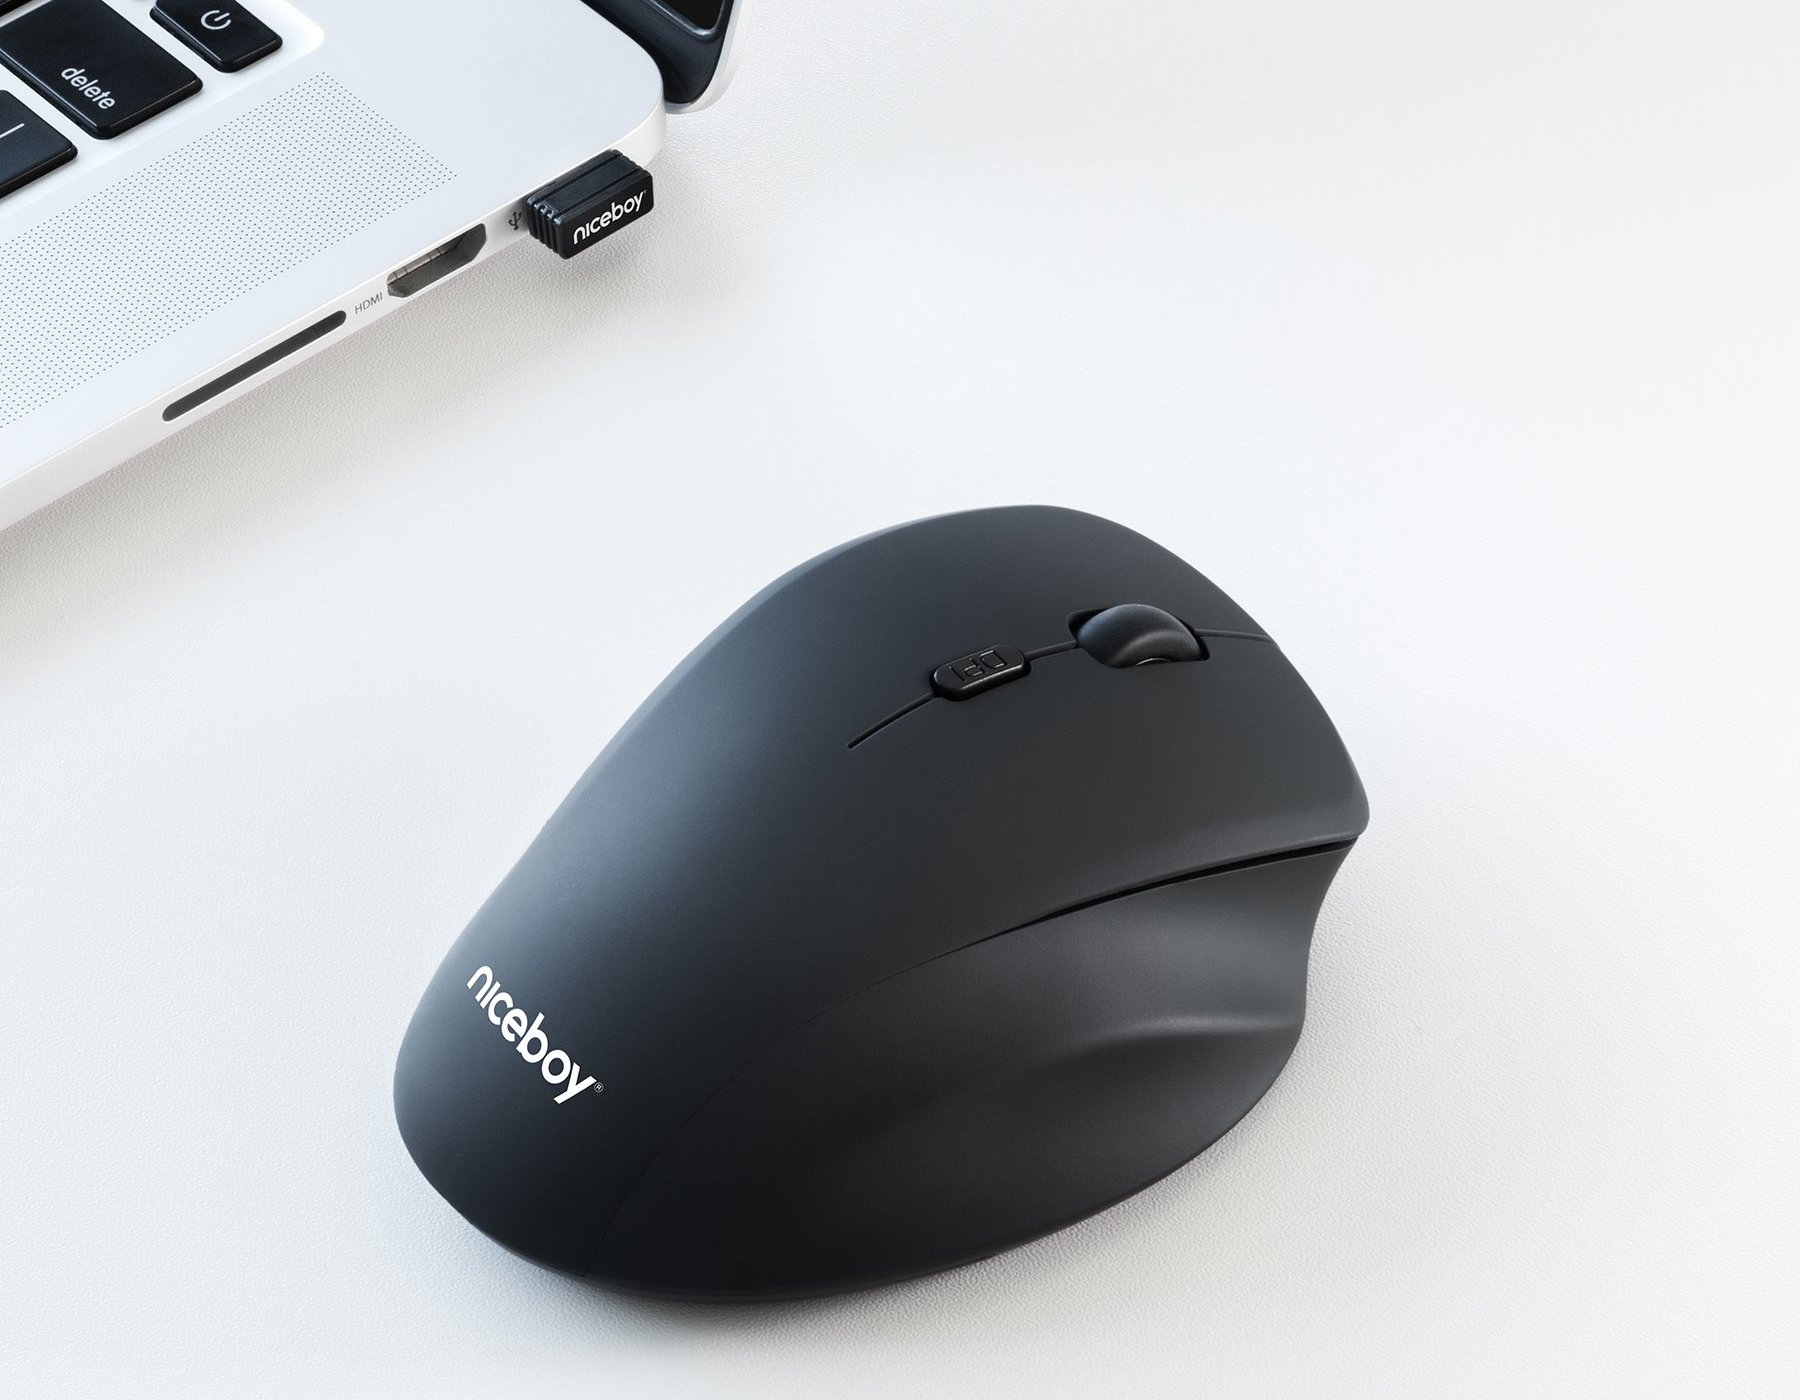 Bezdrôtová myš Niceboy Office M20 komunikuje s PC alebo notebookom až na vzdialenosť 10 m cez priložený 2,4 GHz USB prijímač.